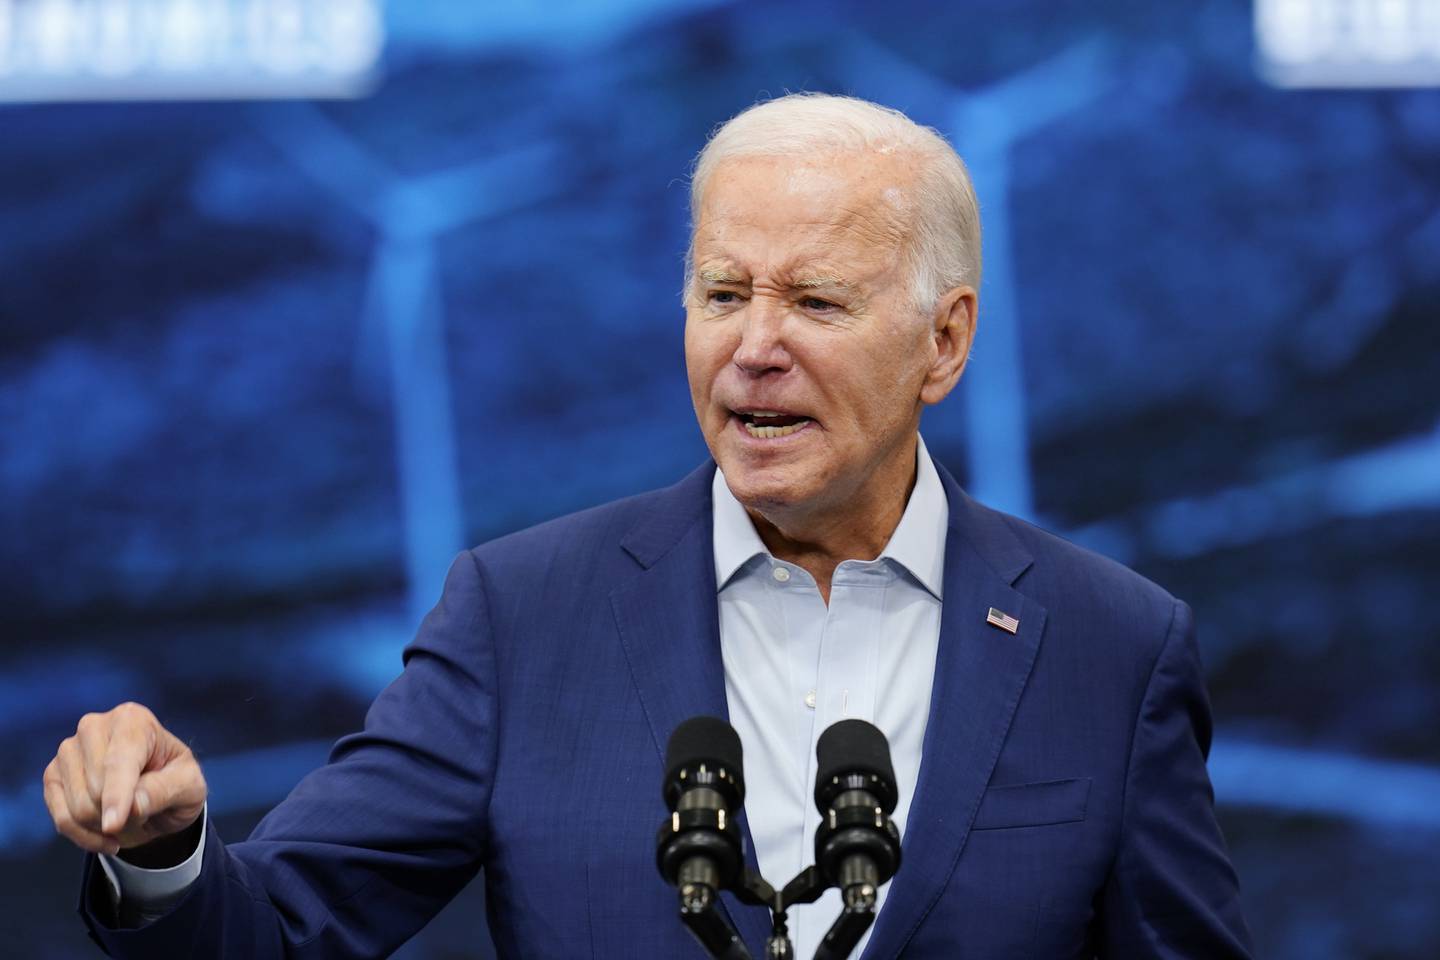 President Joe Biden lovet i en tale under et fabrikkbesøk i New Mexico onsdag at flere skal få kompensasjon etter å ha blitt utsatt for radioaktiv stråling etter testing av atomvåpen under den kalde krigen. Foto: Ross D. Franklin / AP / NTB